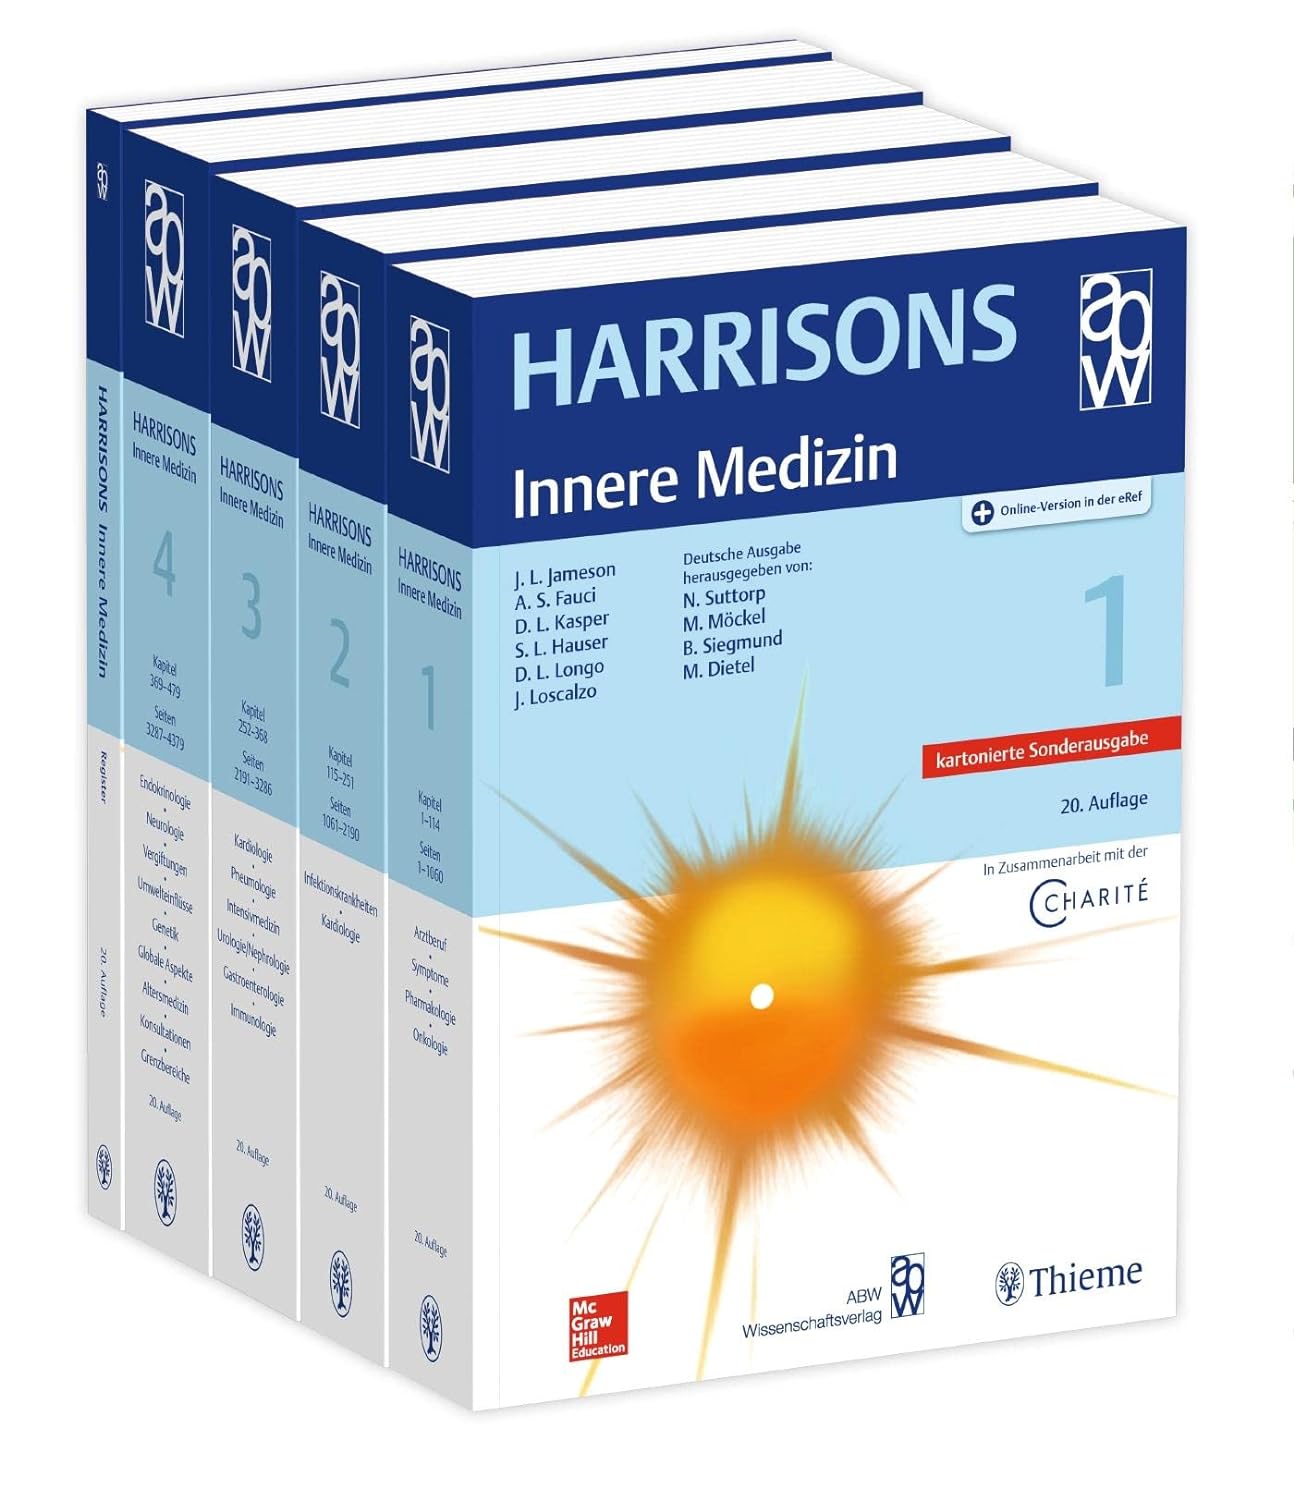 Harrisons Innere Medizin, 20. Auflage/Kartonierte Sondernausgabe, Set mit 4 Bändern+Registerban